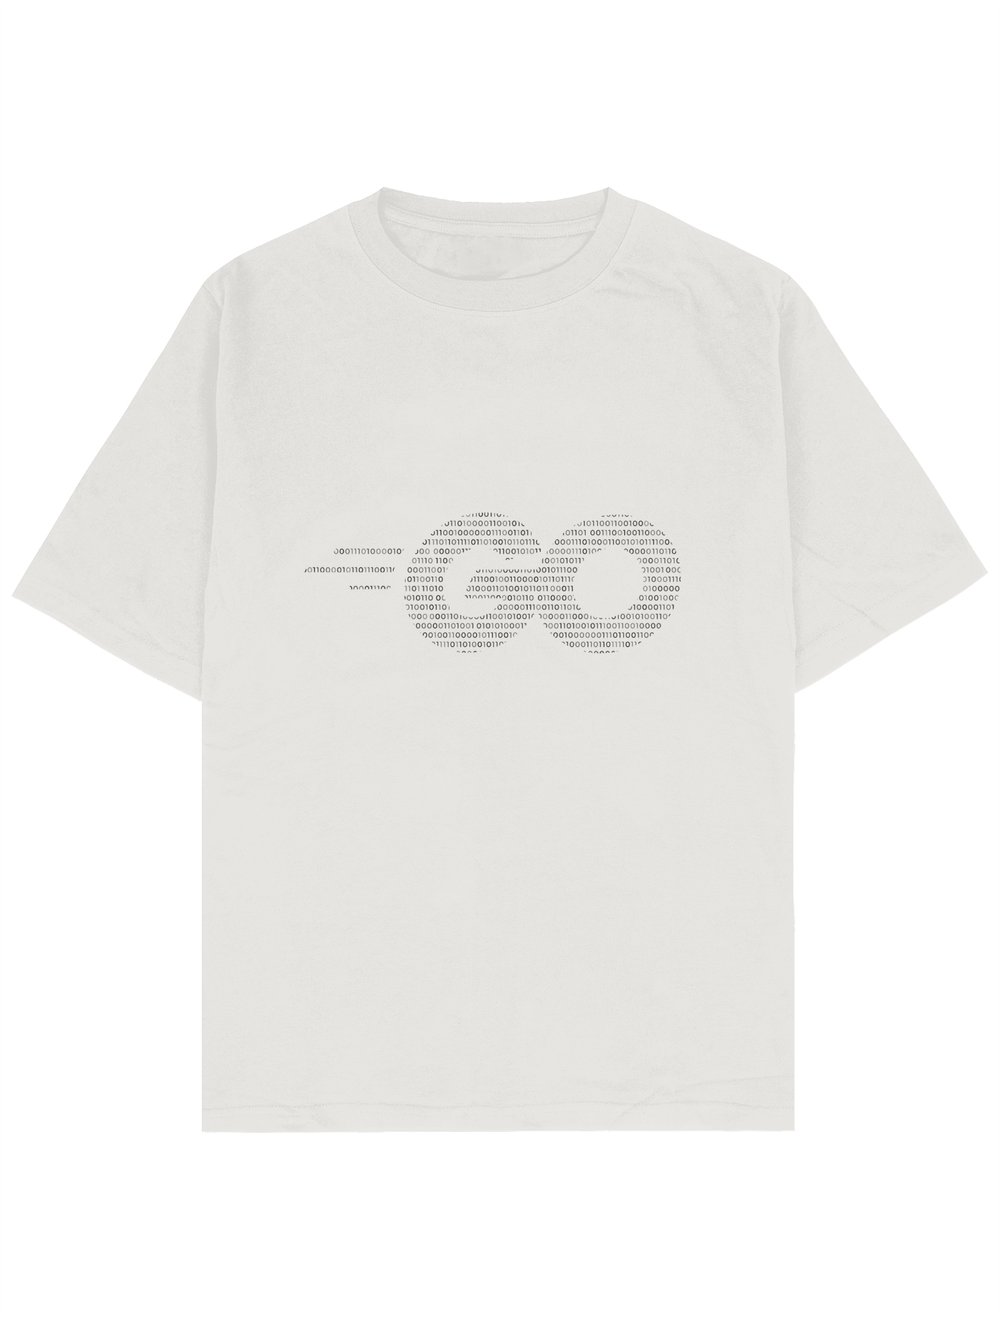 GO ve Binary Code Baskılı Beyaz Oversize Yazılımcı T-shirt